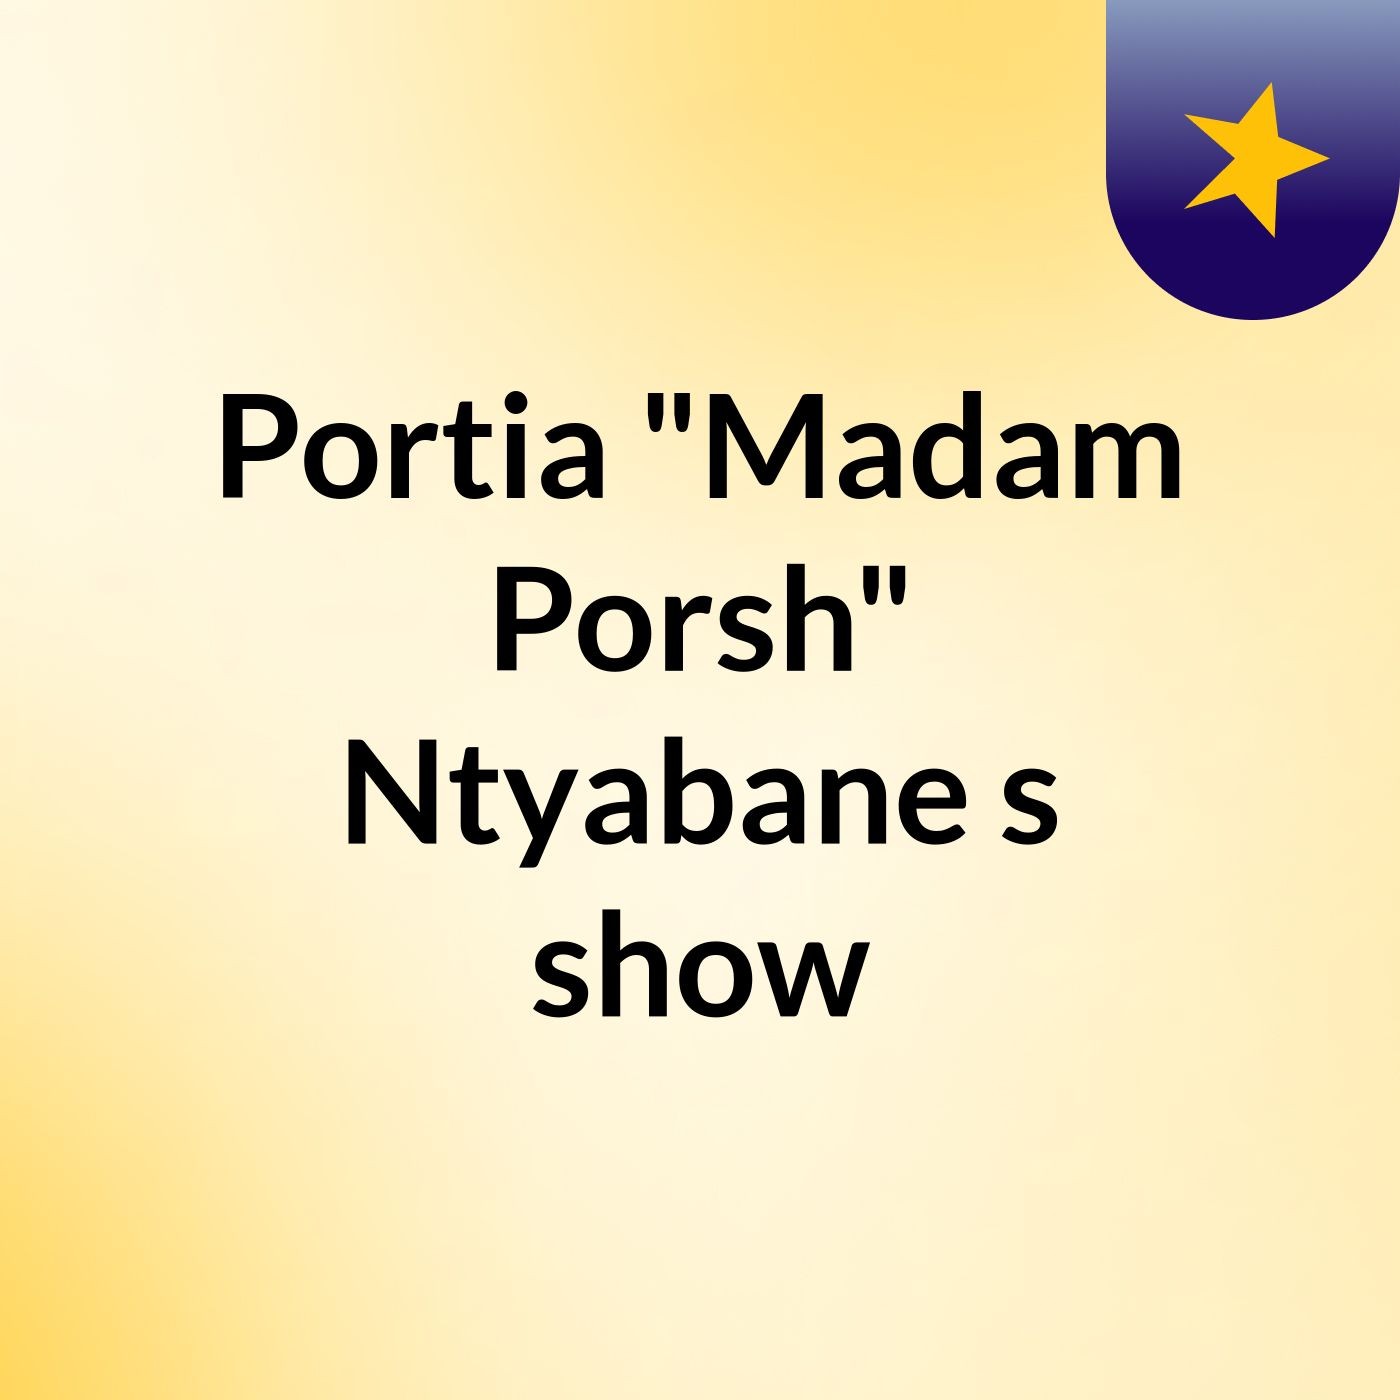 Episode 2 - Portia "Madam Porsh show